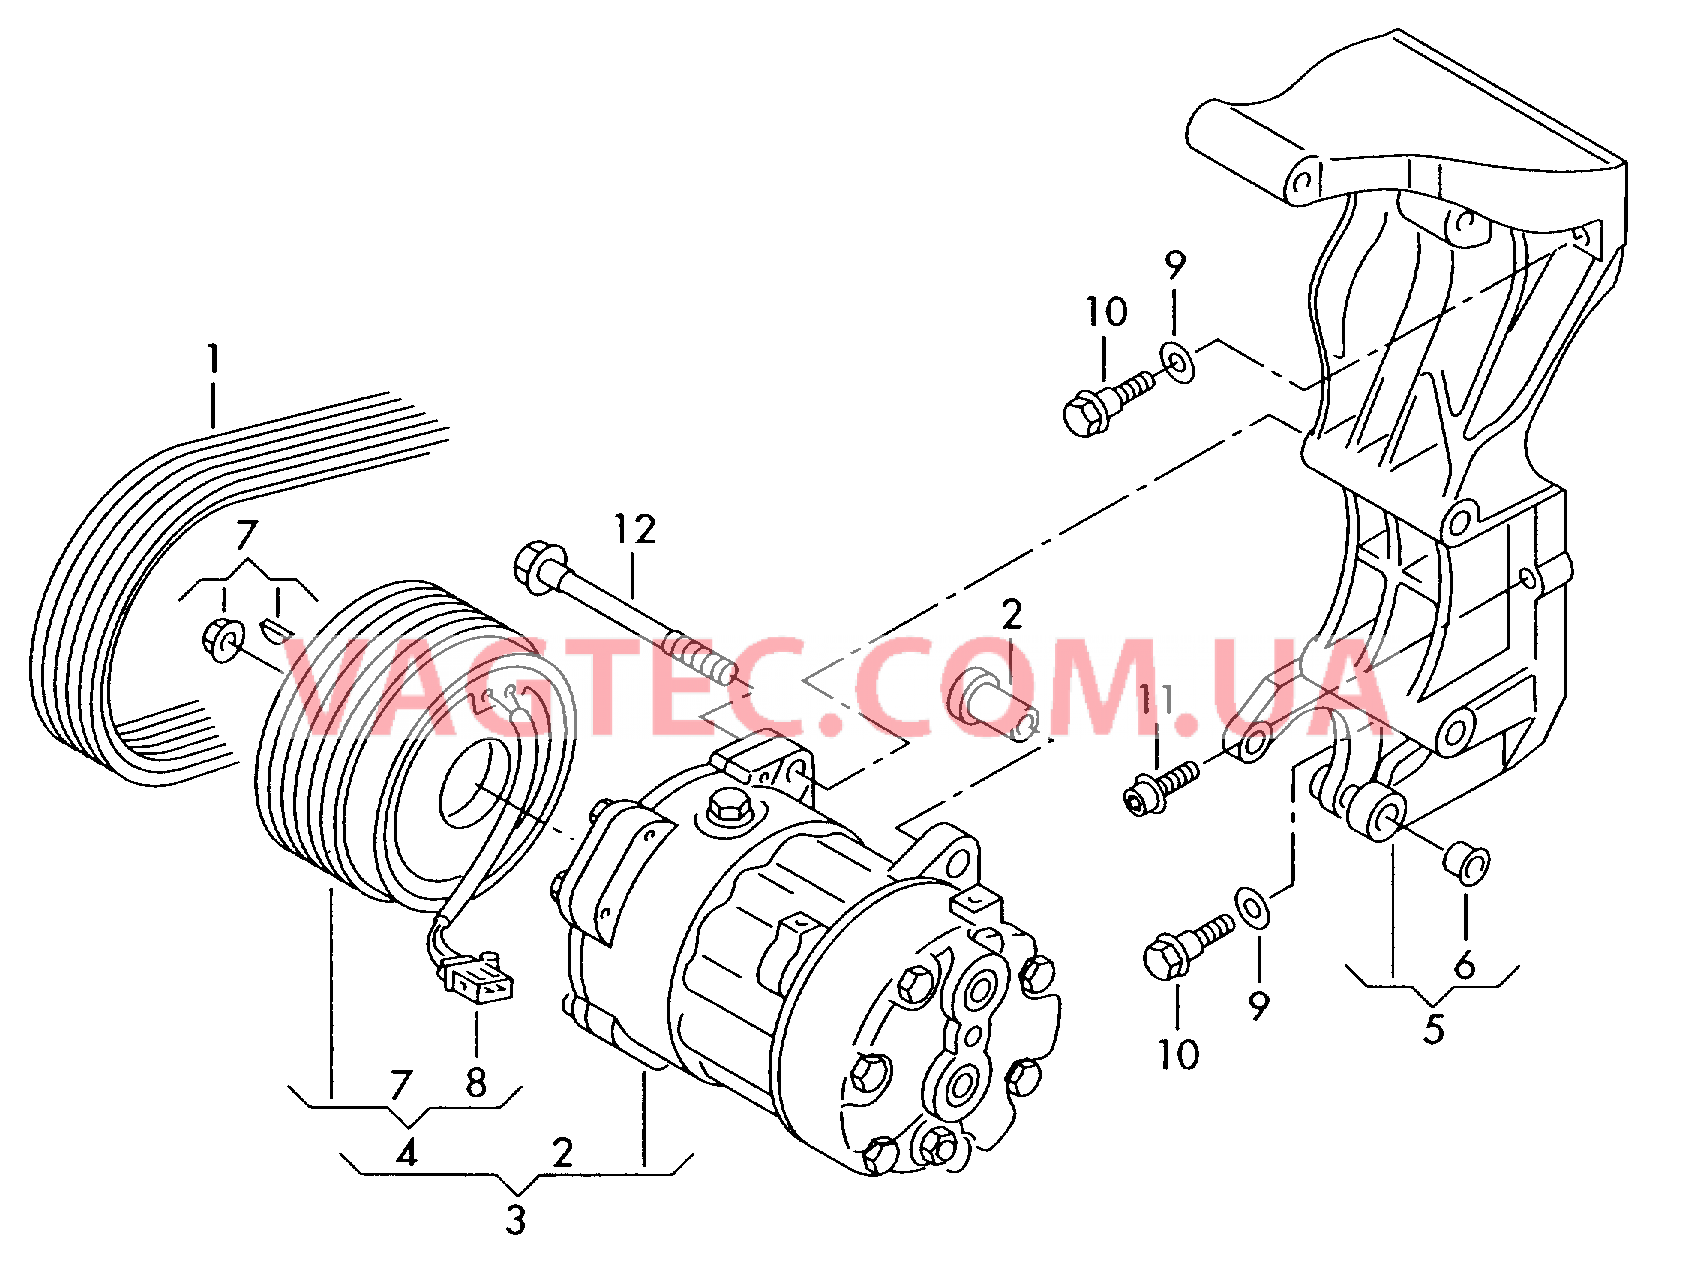 Компрессор климатической уст. Электромагнитная муфта Кронштейн генератора и компрессора кондиционера  для VOLKSWAGEN Transporter 2005-1